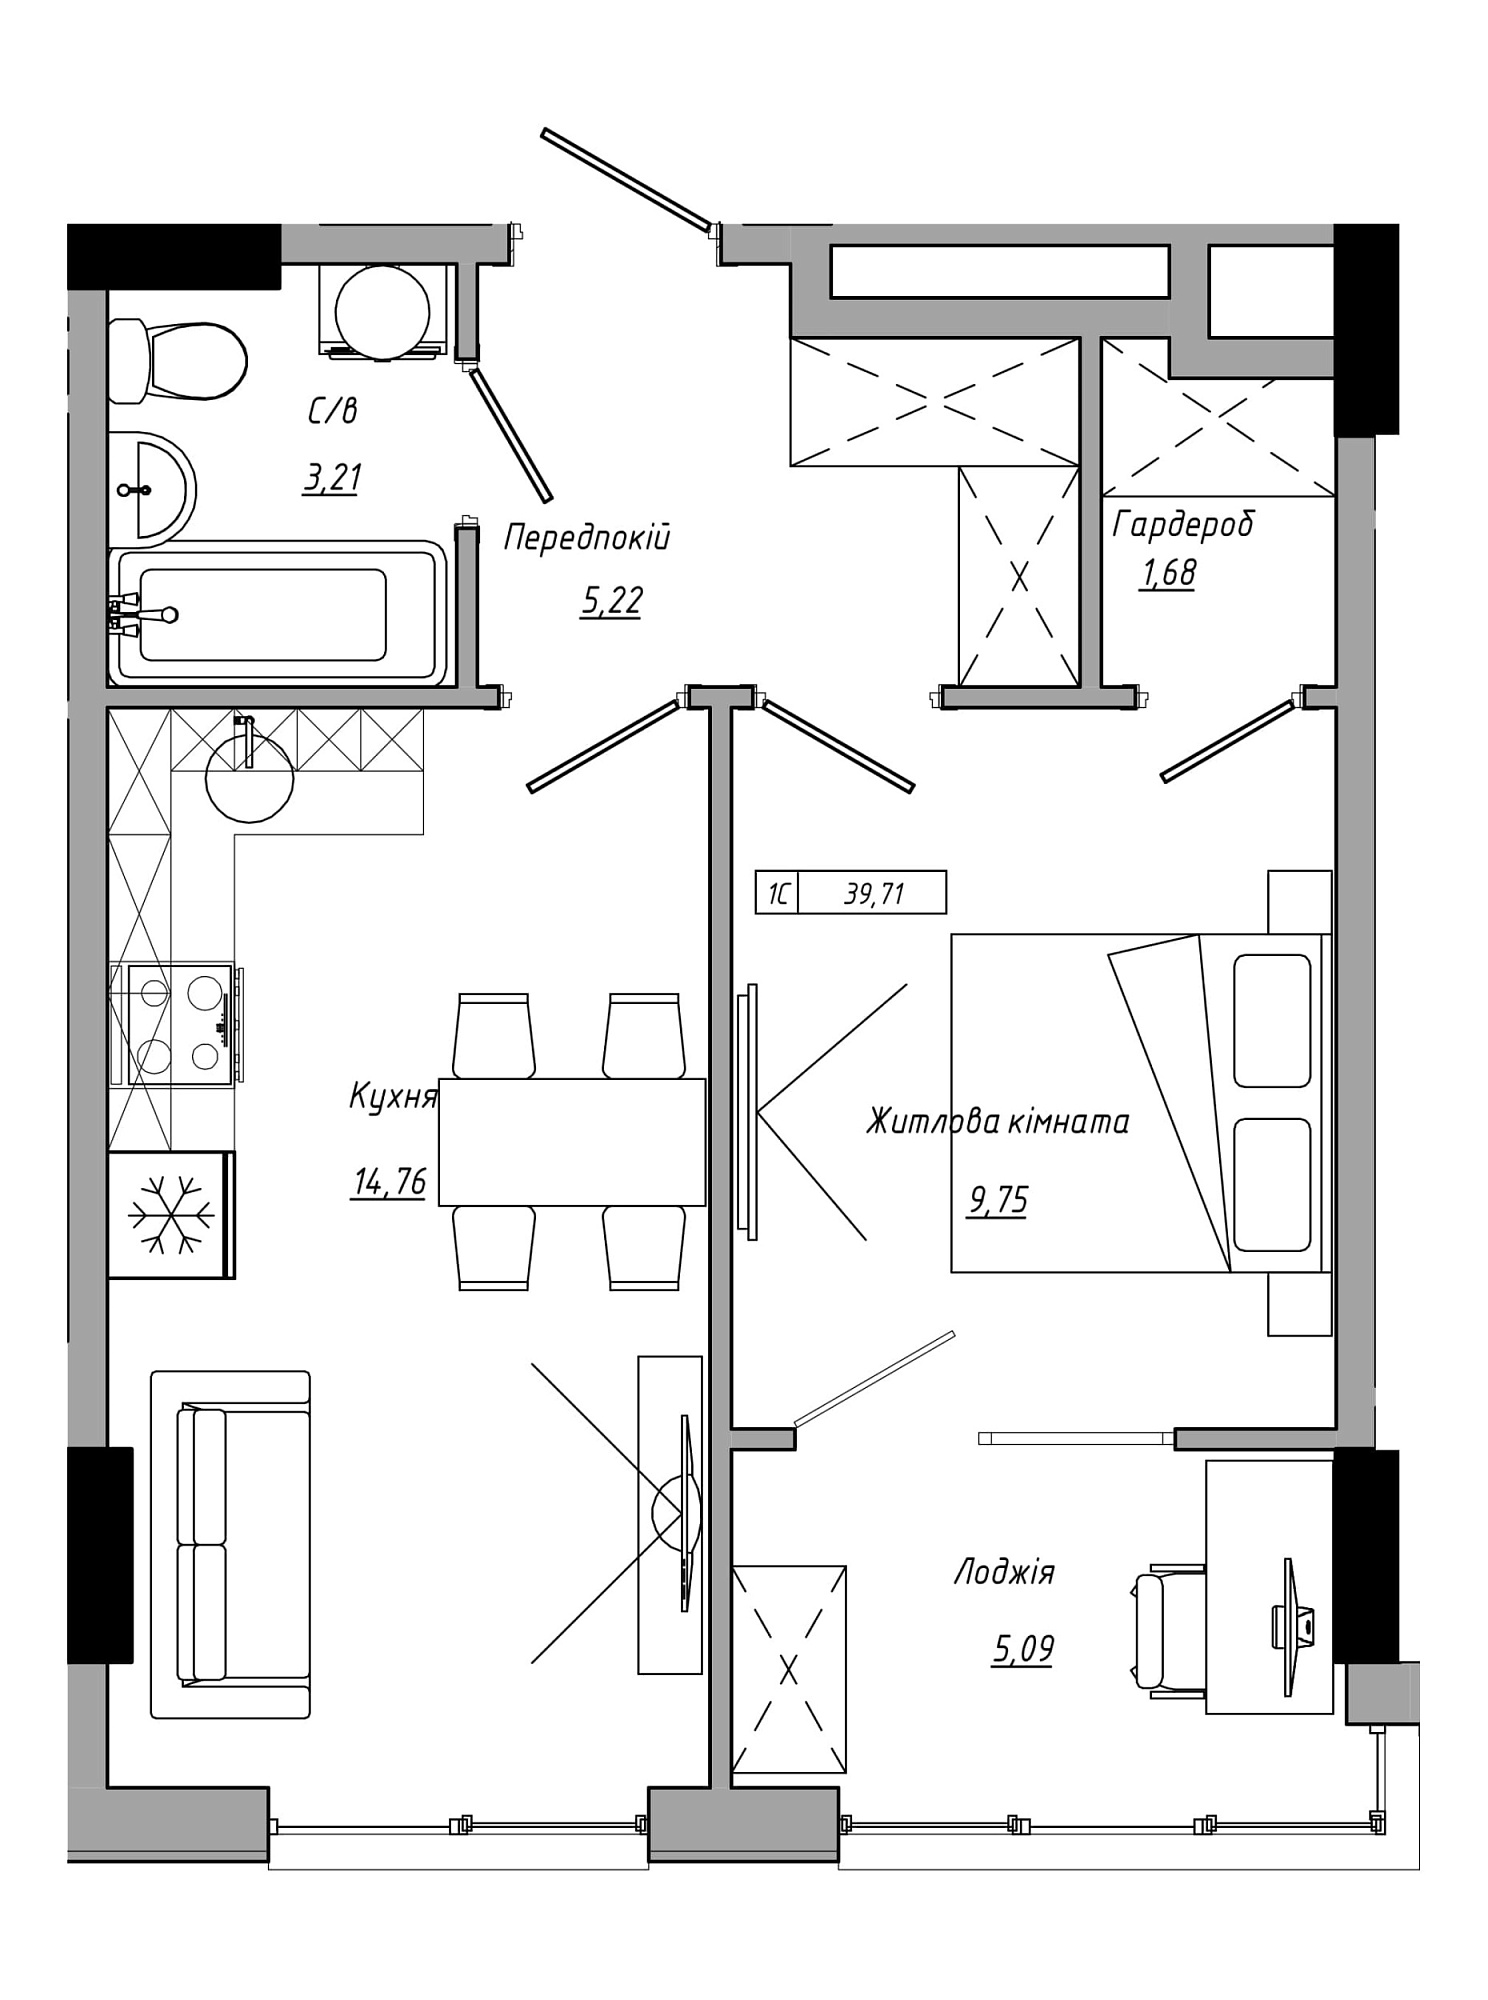 Планування 1-к квартира площею 39.71м2, AB-21-12/00021.